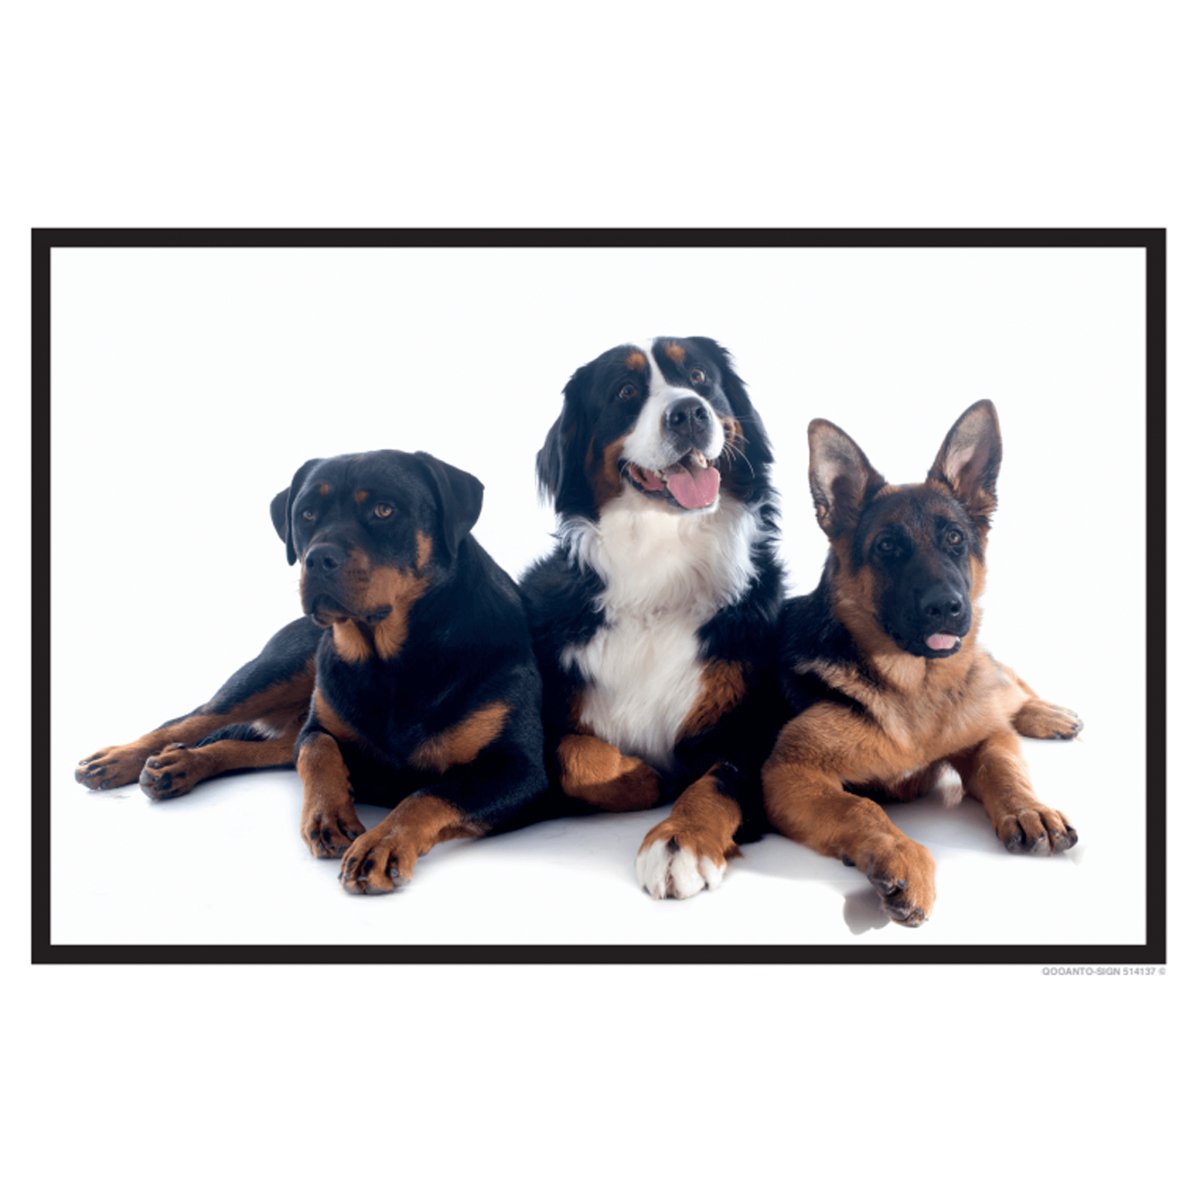 Hundeschild oder Aufkleber, 3 Hunde, aus Alu-Verbund oder Selbstklebefolie mit UV-Schutz - QOOANTO-SIGN